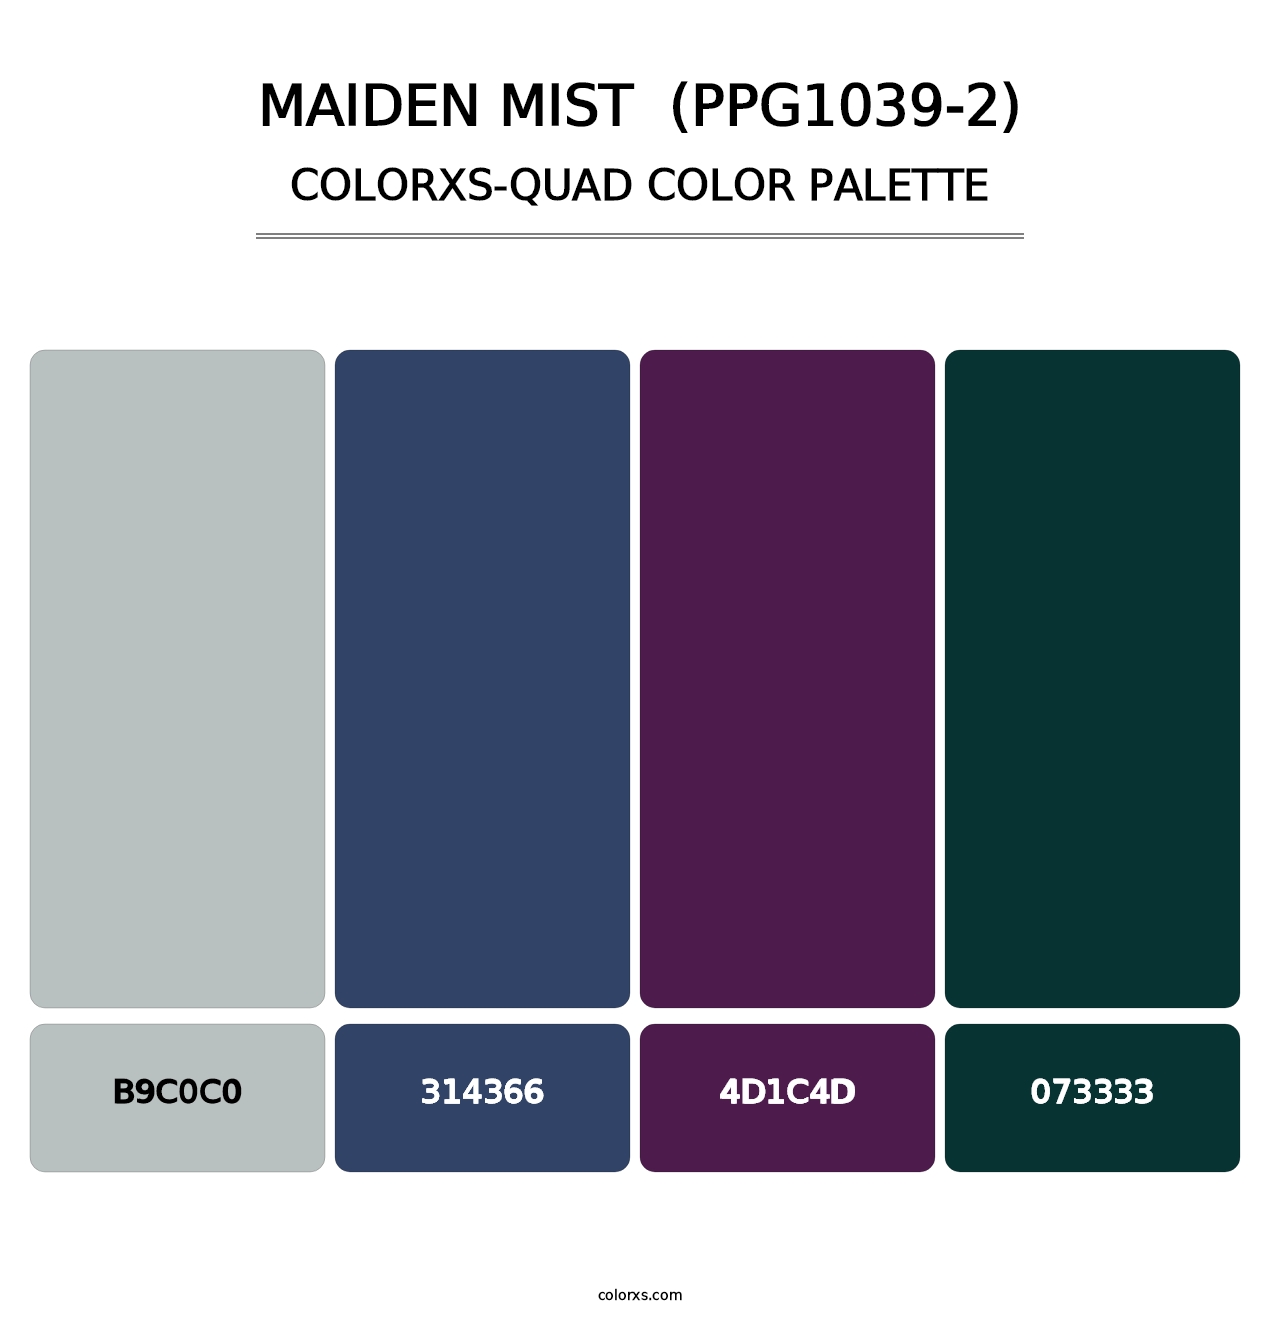 Maiden Mist  (PPG1039-2) - Colorxs Quad Palette